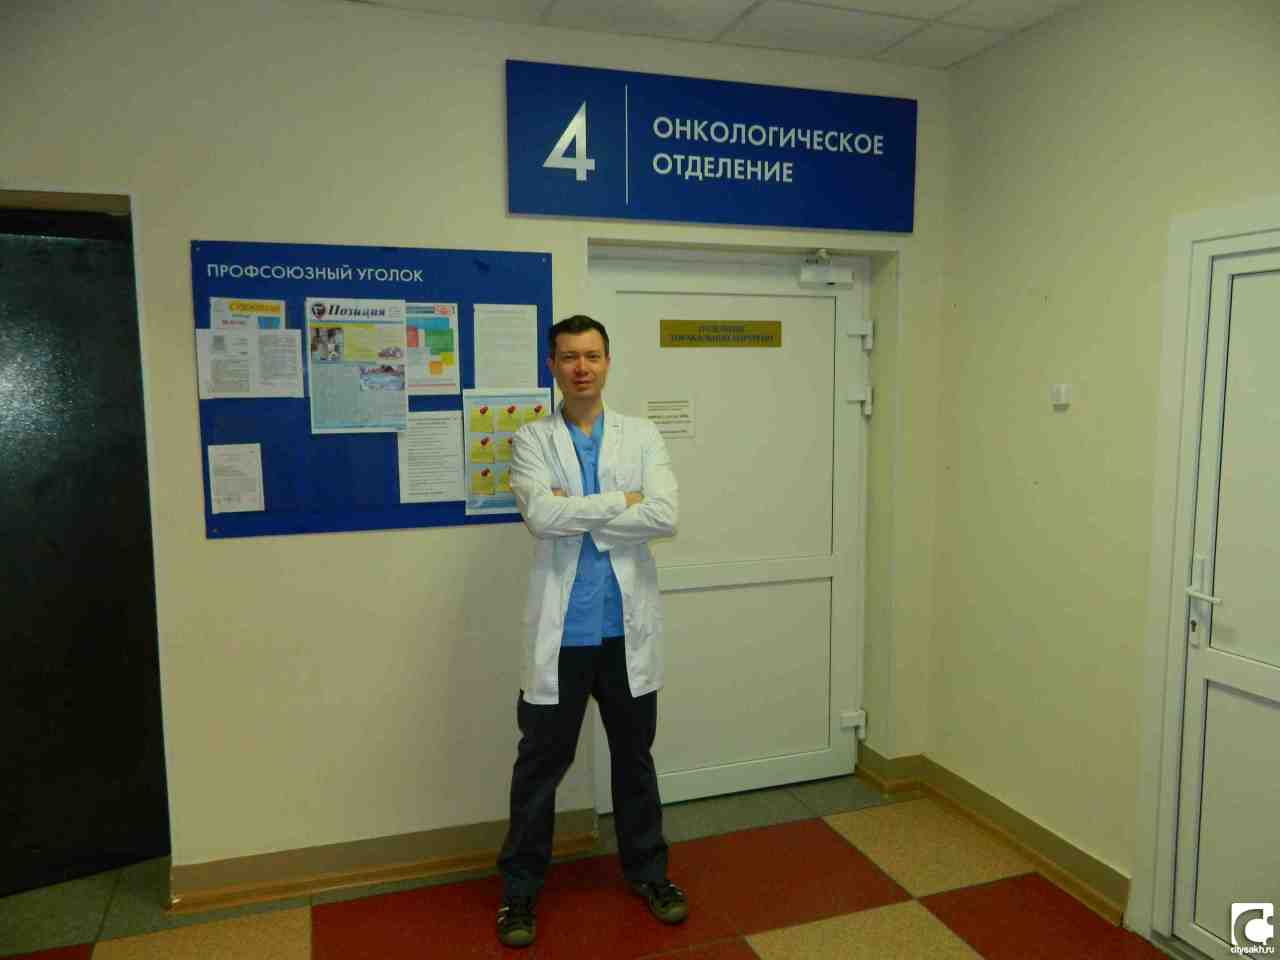 Сайт чеховской больницы